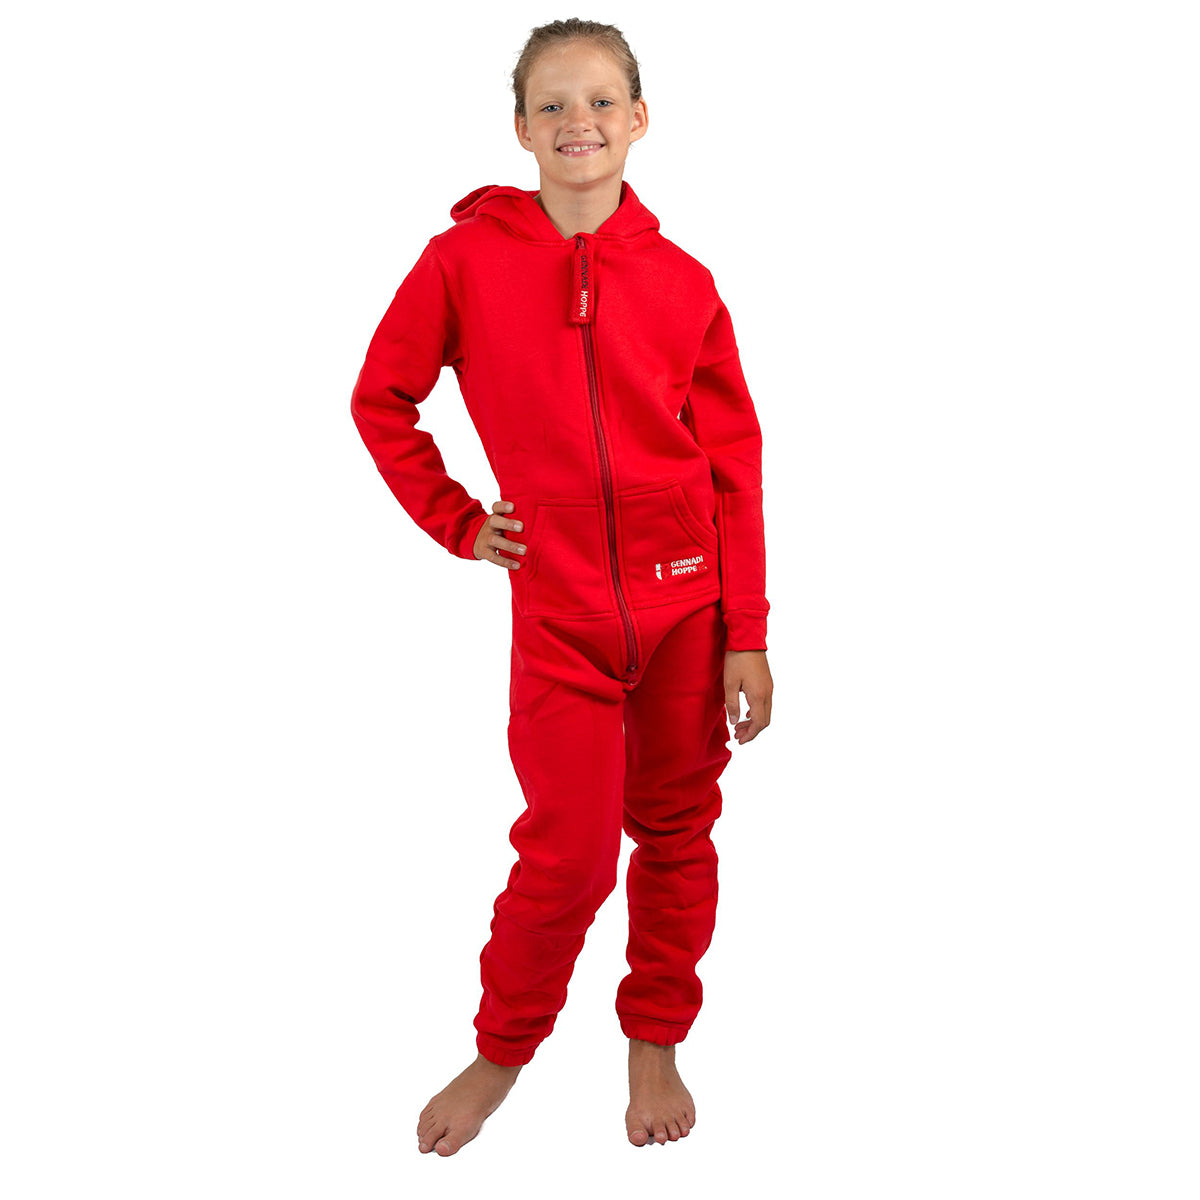 Gennadi Hoppe Kinder Jumpsuit - Jungen, Mädchen Onesie Jogger Einteiler Overall Jogging Anzug Trainingsanzug